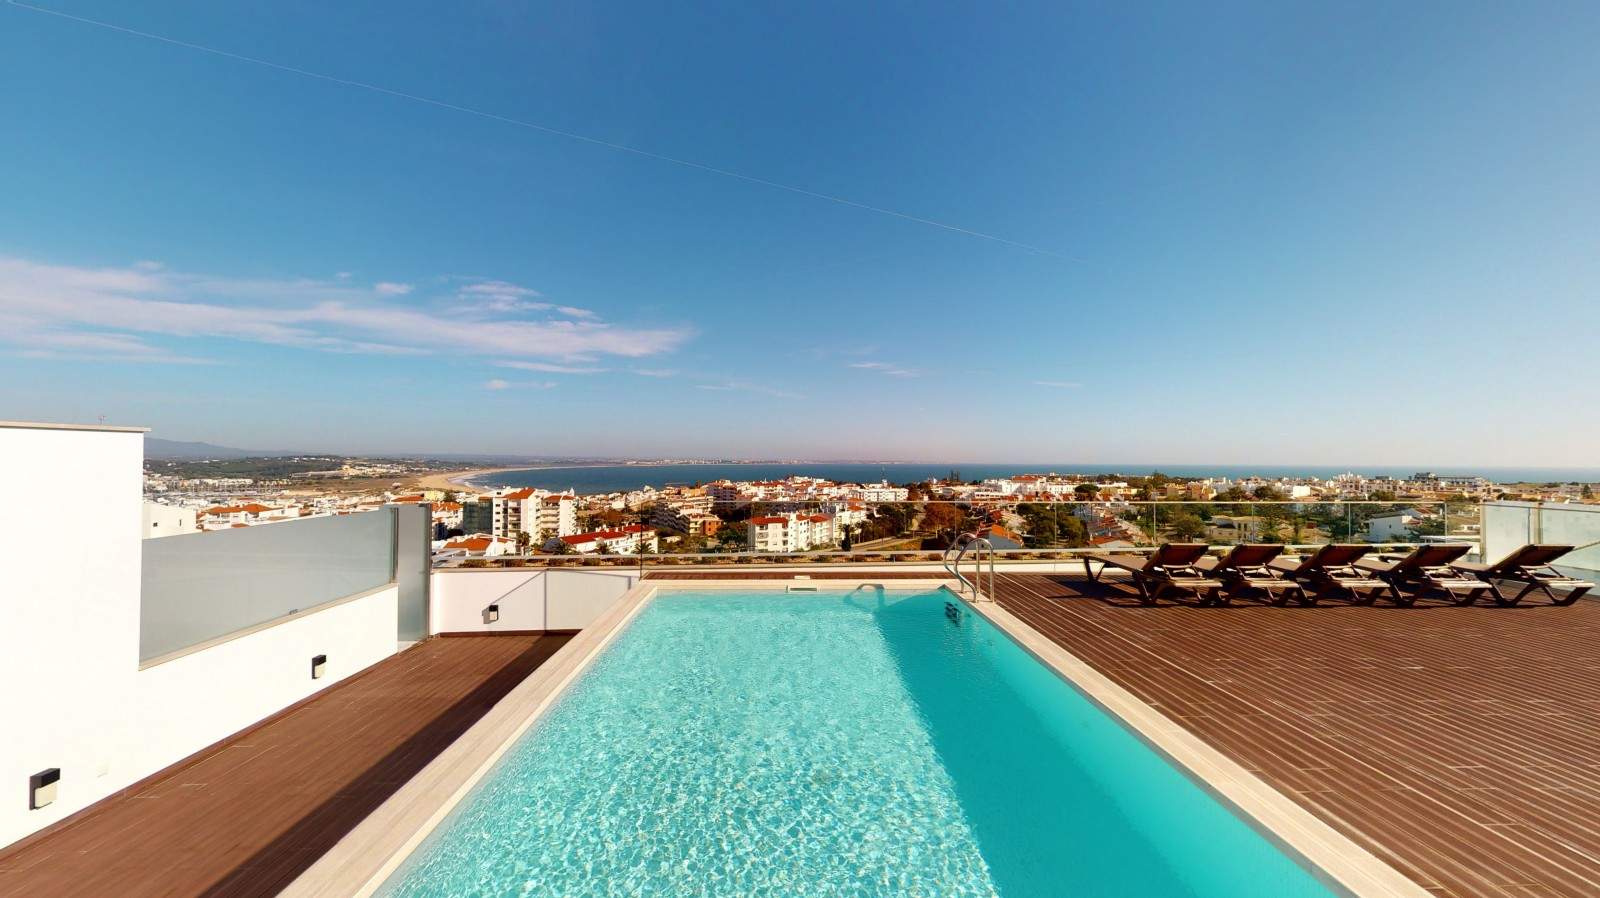 Venta de ático nuevo, piscina y vistas al mar, Lagos, Algarve,Portugal_208284